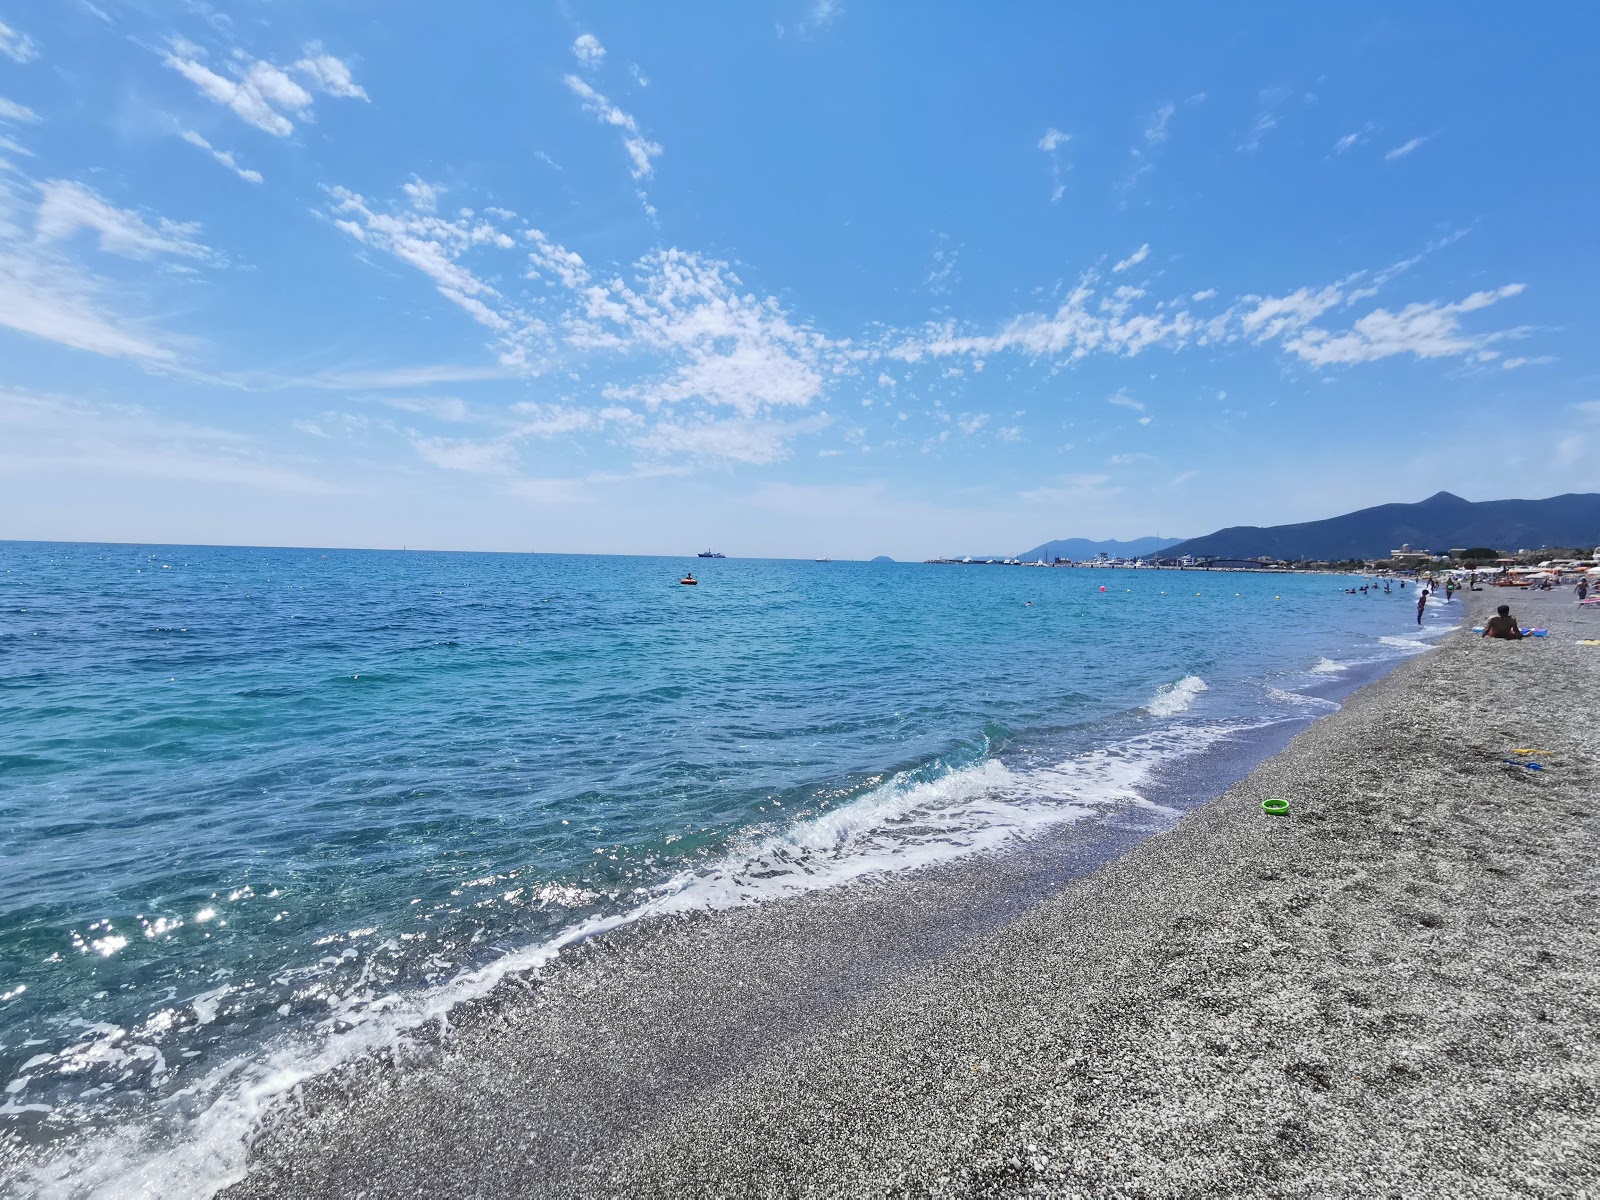 Foto von Spiaggia Pietra Ligure - beliebter Ort unter Entspannungskennern